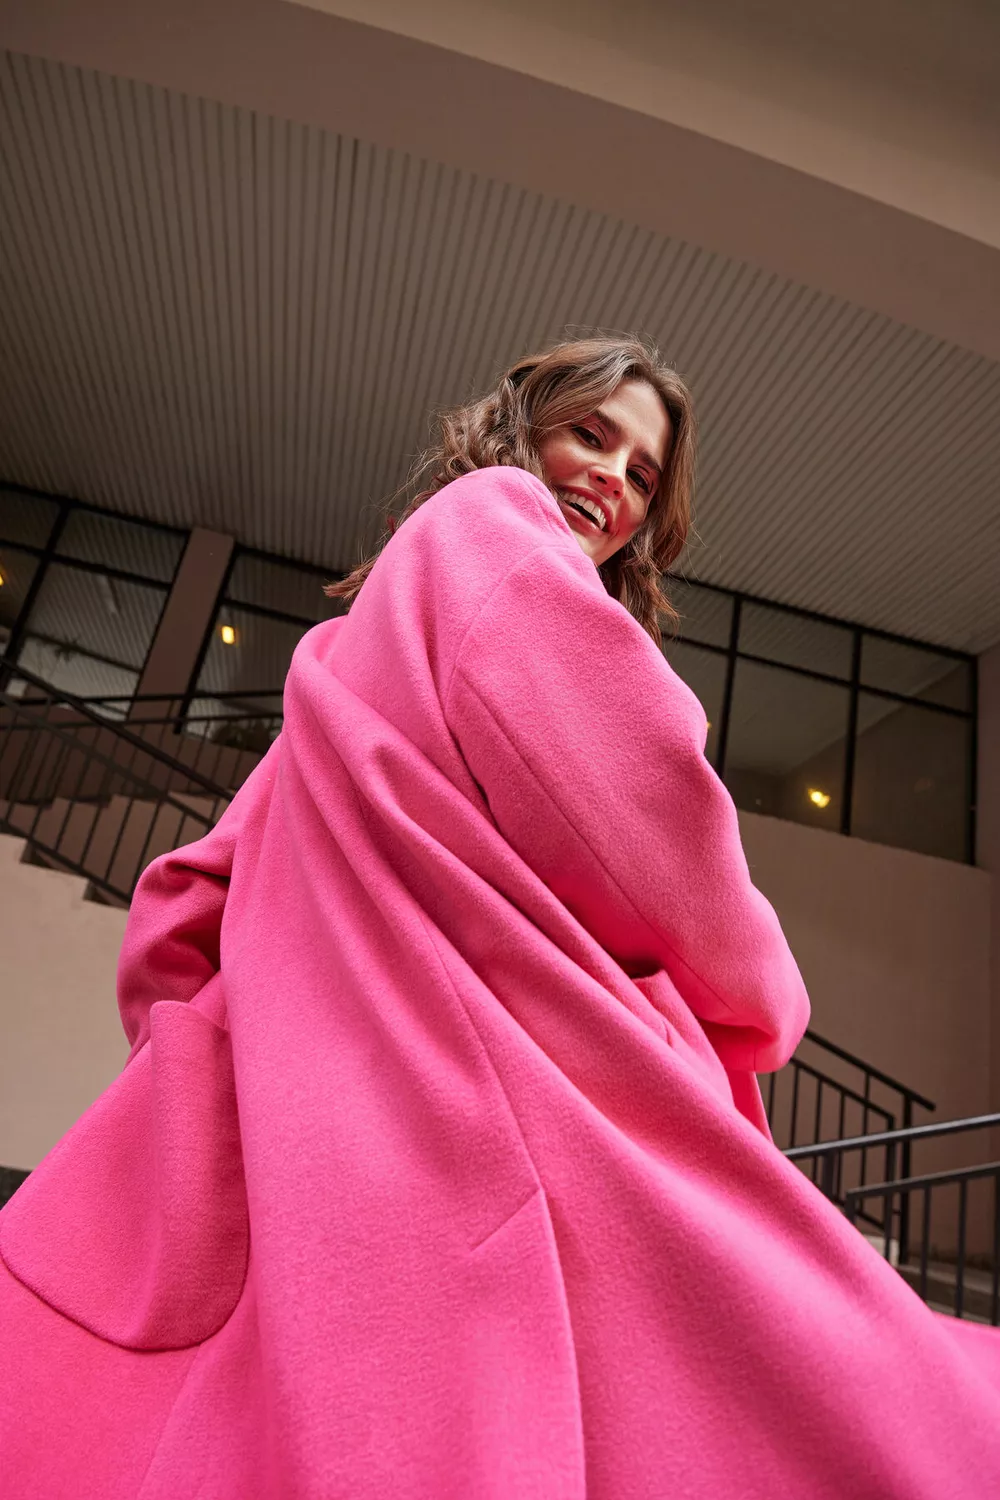 От розового пальто до платья в цветочек: 5 трендовых вещей для весеннего гардероба